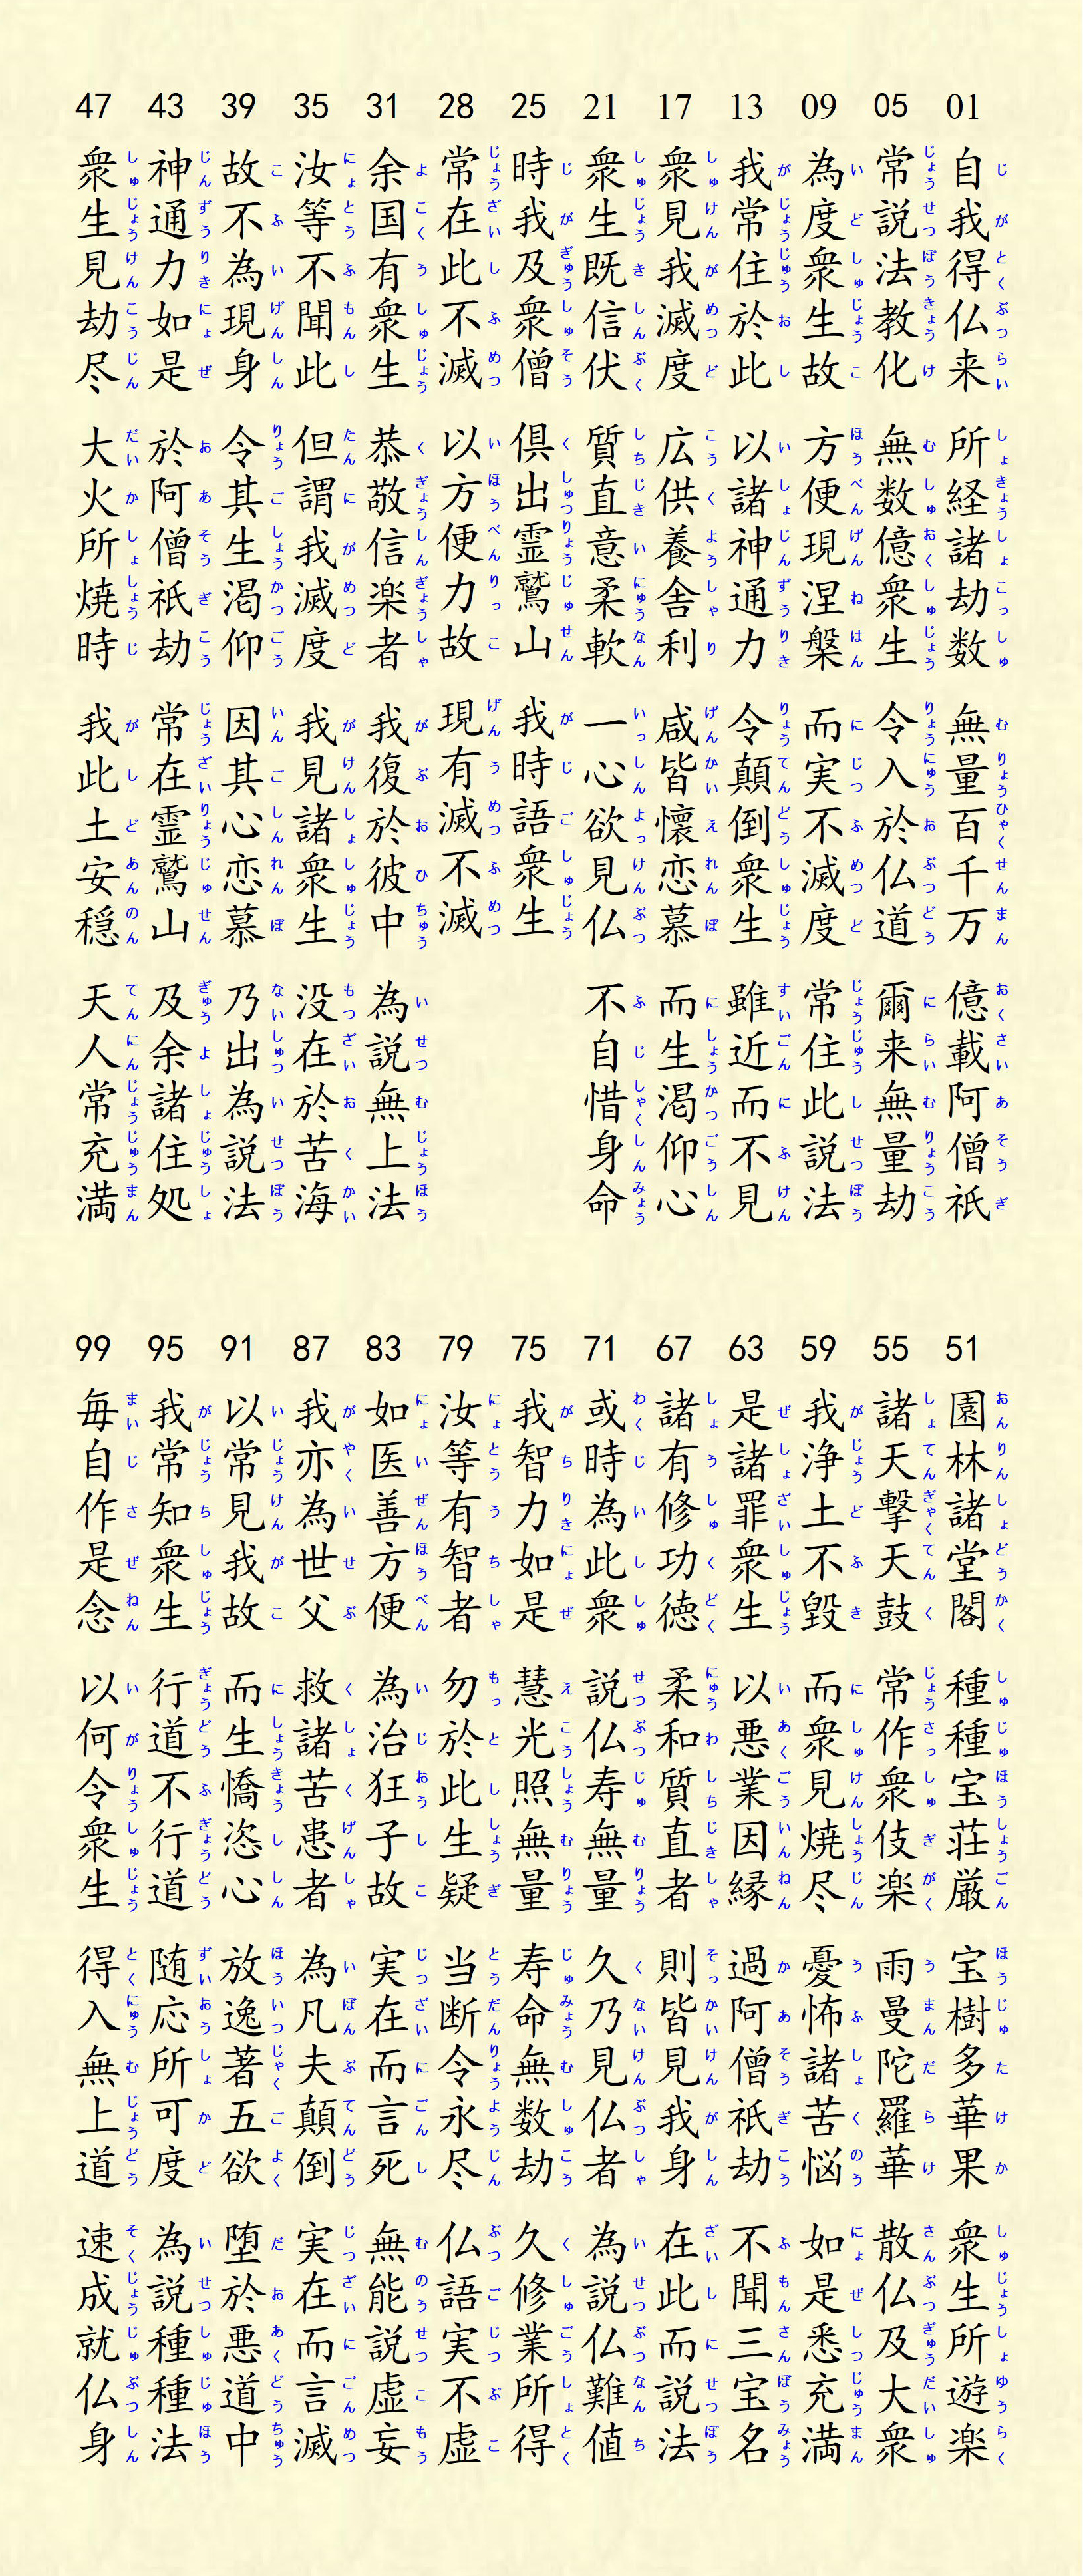 ファイル:JIGAGE of HOKEKYOU or Lotus Sutra in Japan assigned